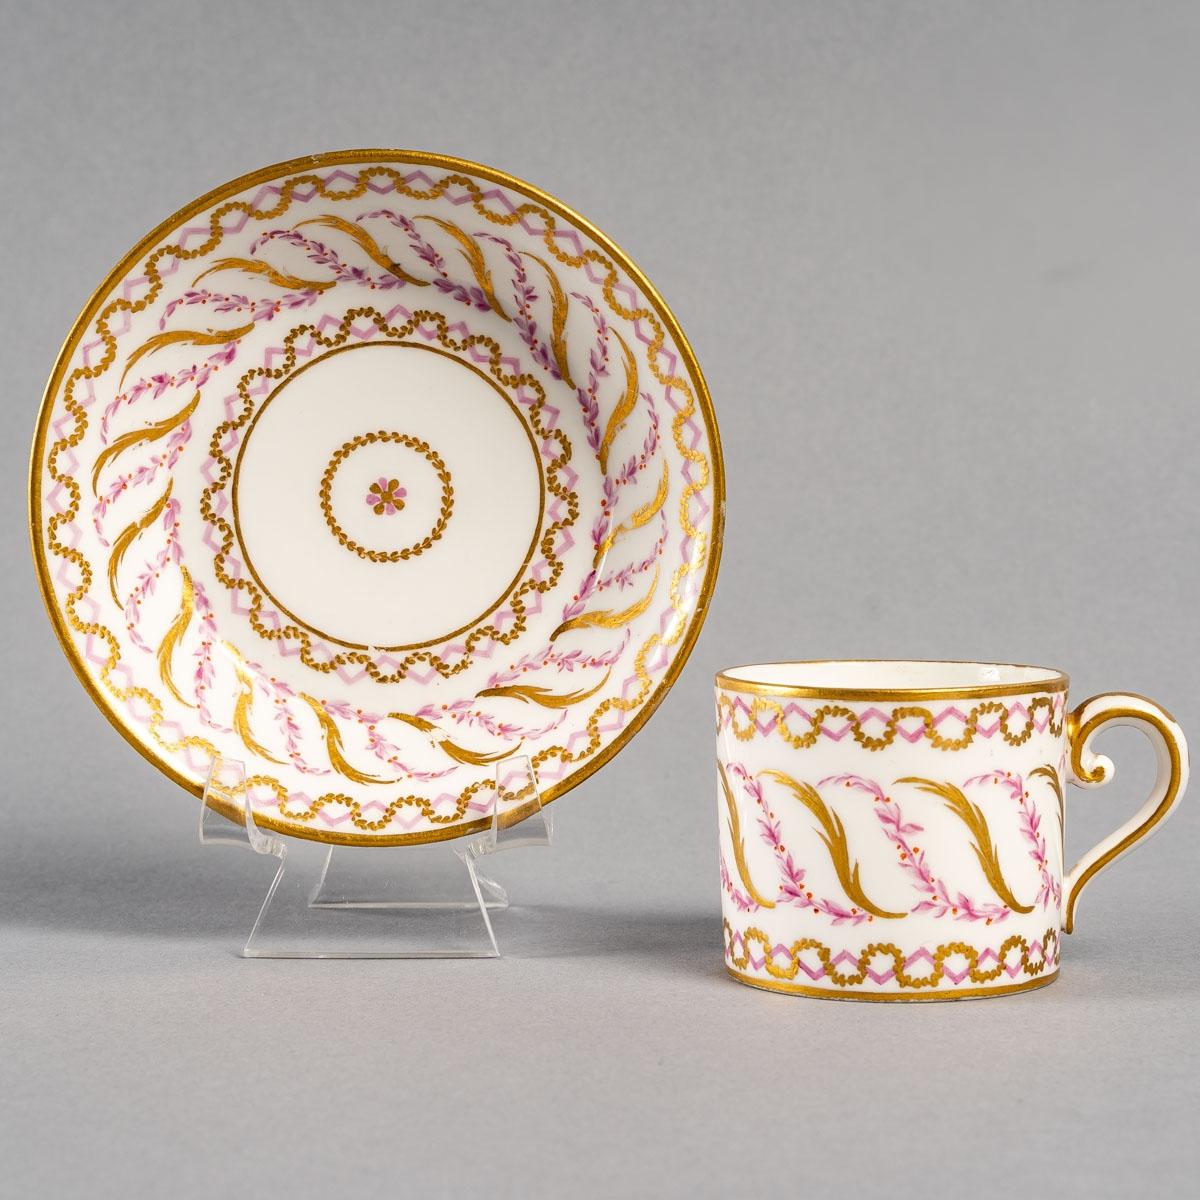 Tasse à café en porcelaine de Sèvres, du XVIIIe siècle

Belle tasse à café du 18e siècle en porcelaine de Sèvres.

Dimensions : H:6,5cm, P : 11cm : H:6,5cm, D : 11cm